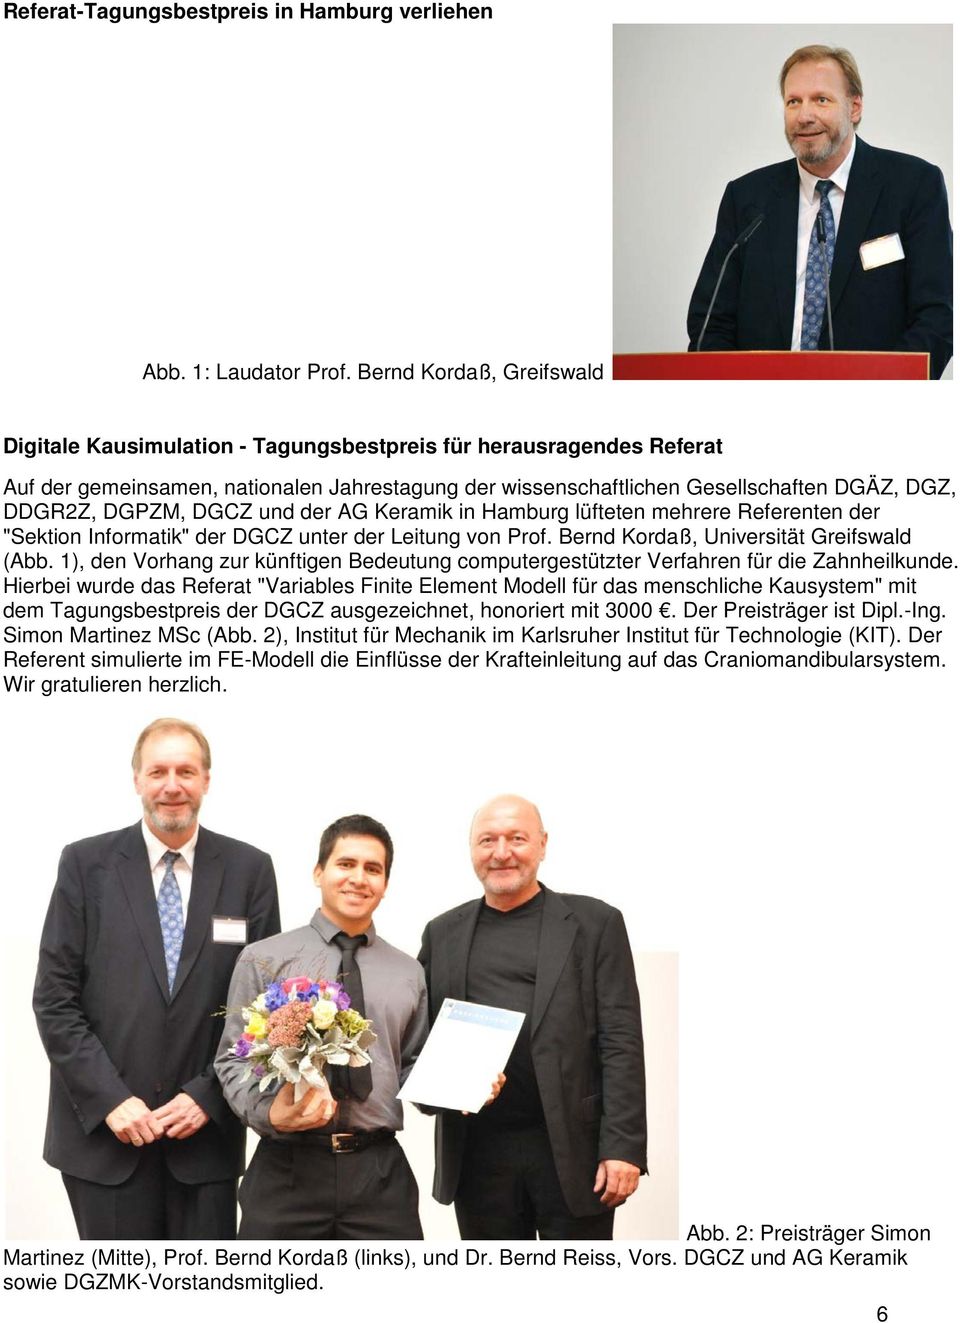 DGPZM, DGCZ und der AG Keramik in Hamburg lüfteten mehrere Referenten der "Sektion Informatik" der DGCZ unter der Leitung von Prof. Bernd Kordaß, Universität Greifswald (Abb.